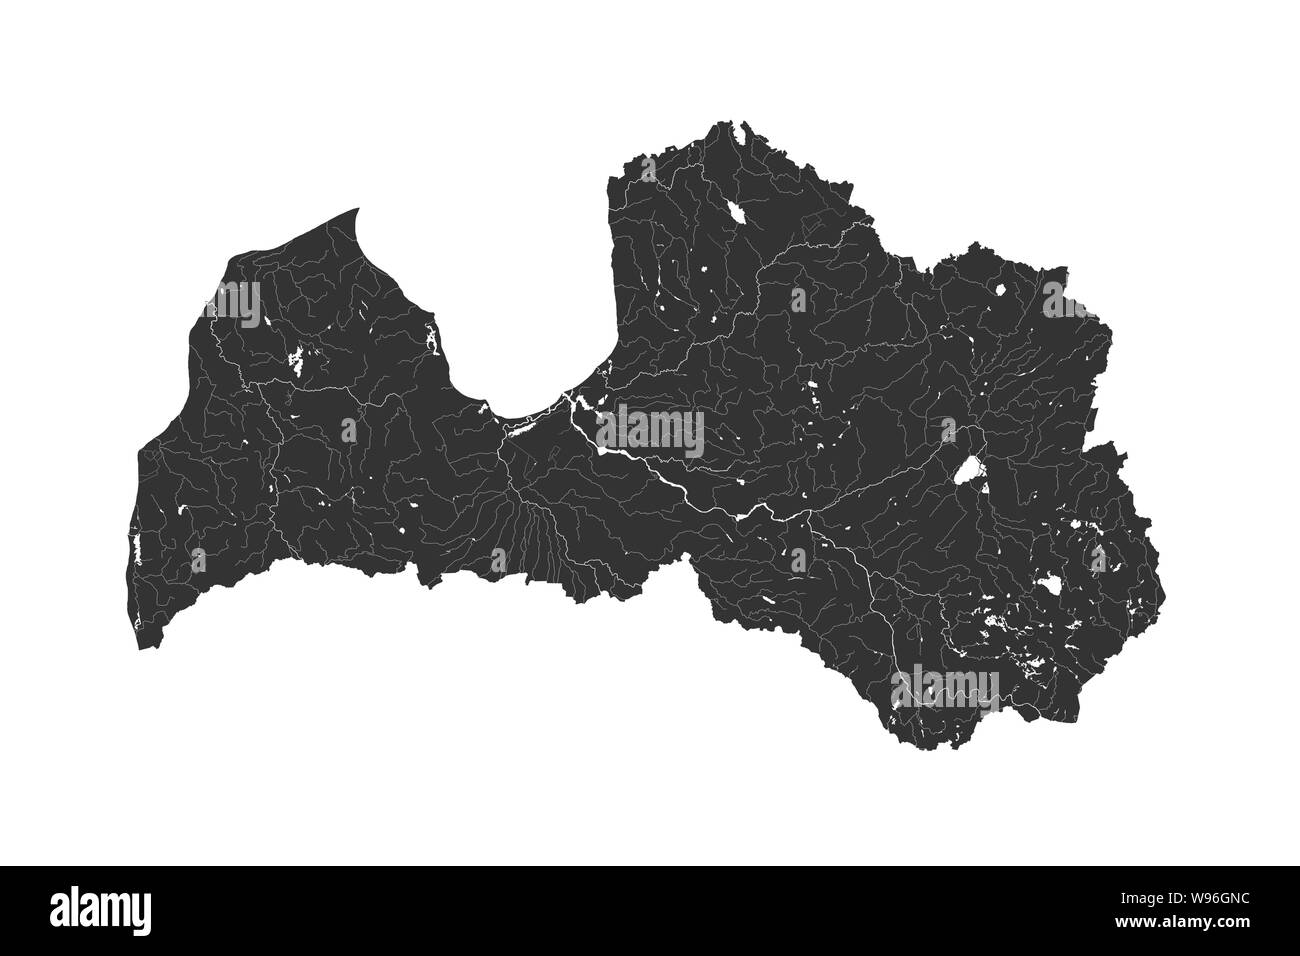 Estados bálticos - mapa de Letonia. Hecho a mano. Los ríos y lagos son mostradas. Por favor mire mis otras imágenes de la serie cartográfica - todos son muy detalle Ilustración del Vector